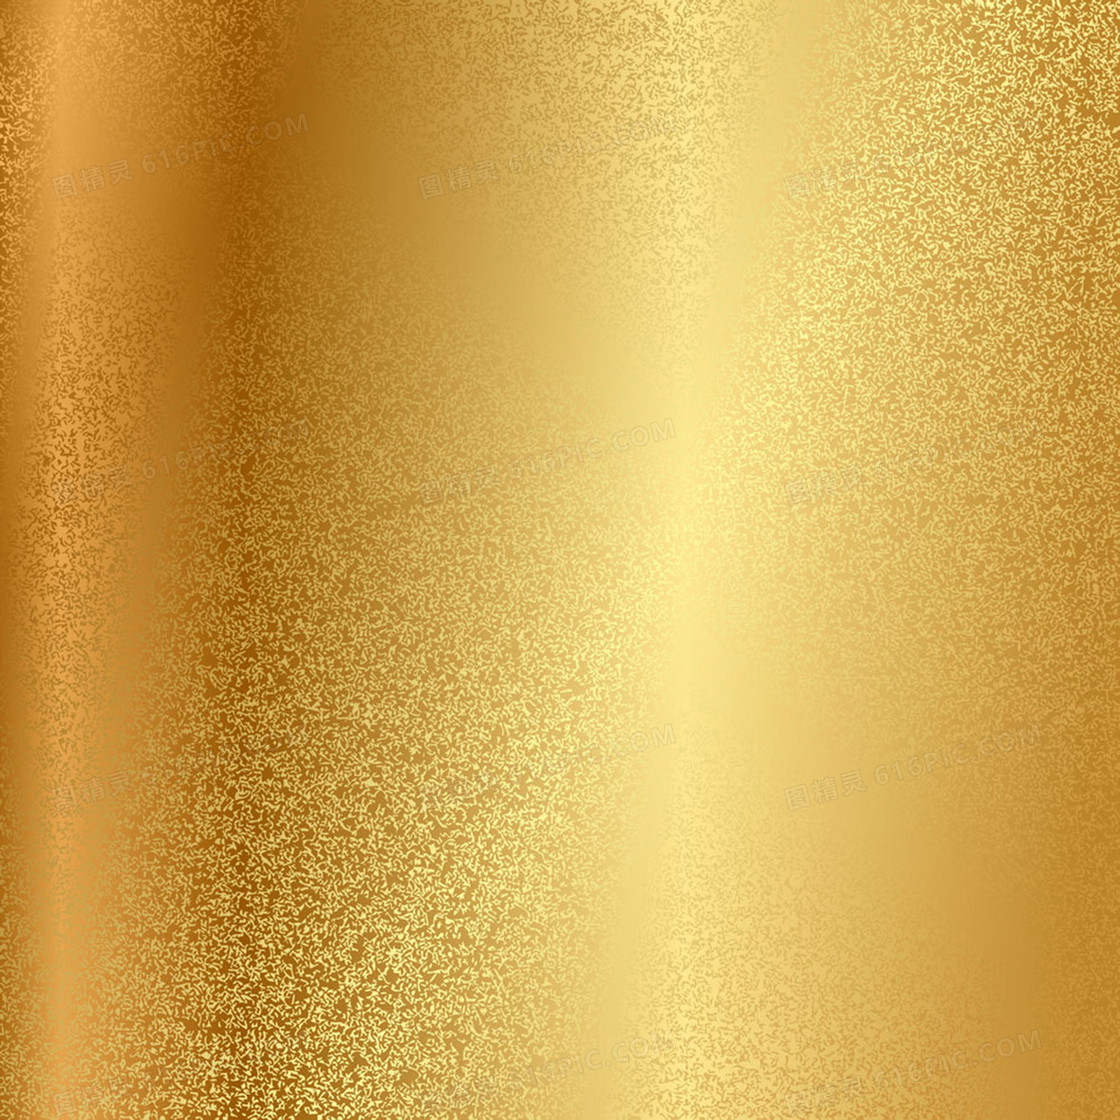 10个土豪金高端金色背景底纹纹理素材包 – 简单设计